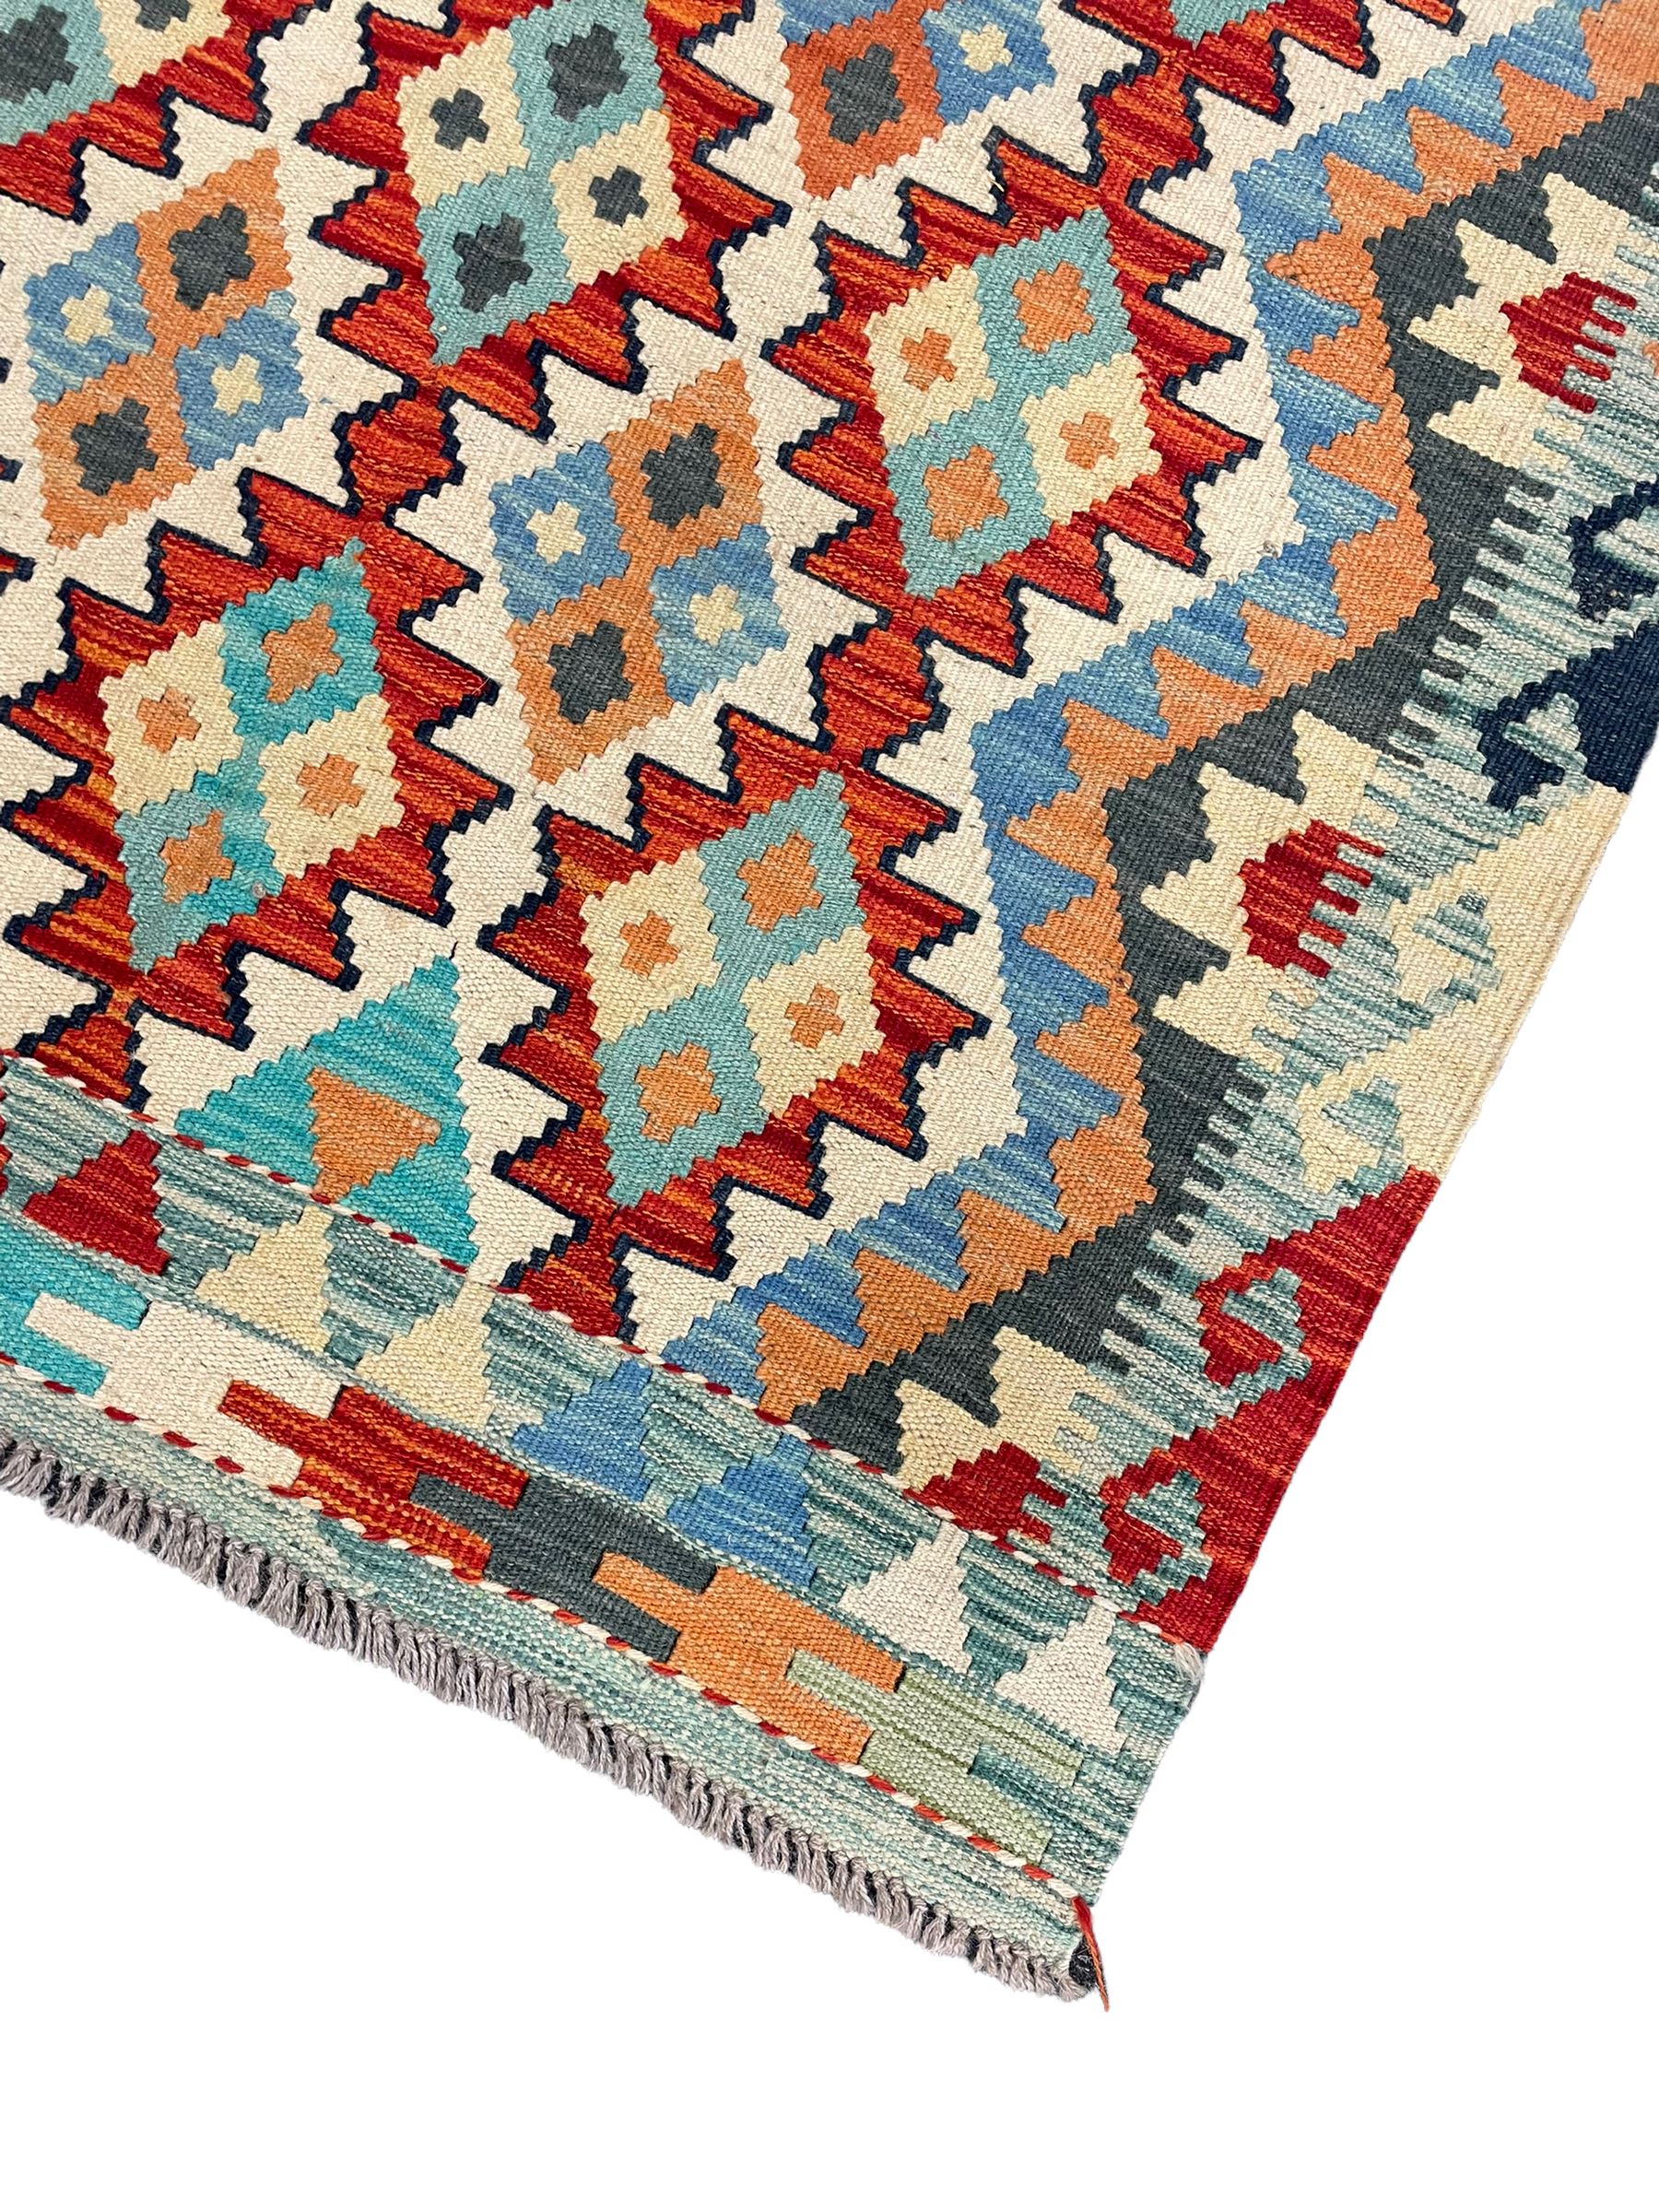 Chobi kilim rug - Image 2 of 3